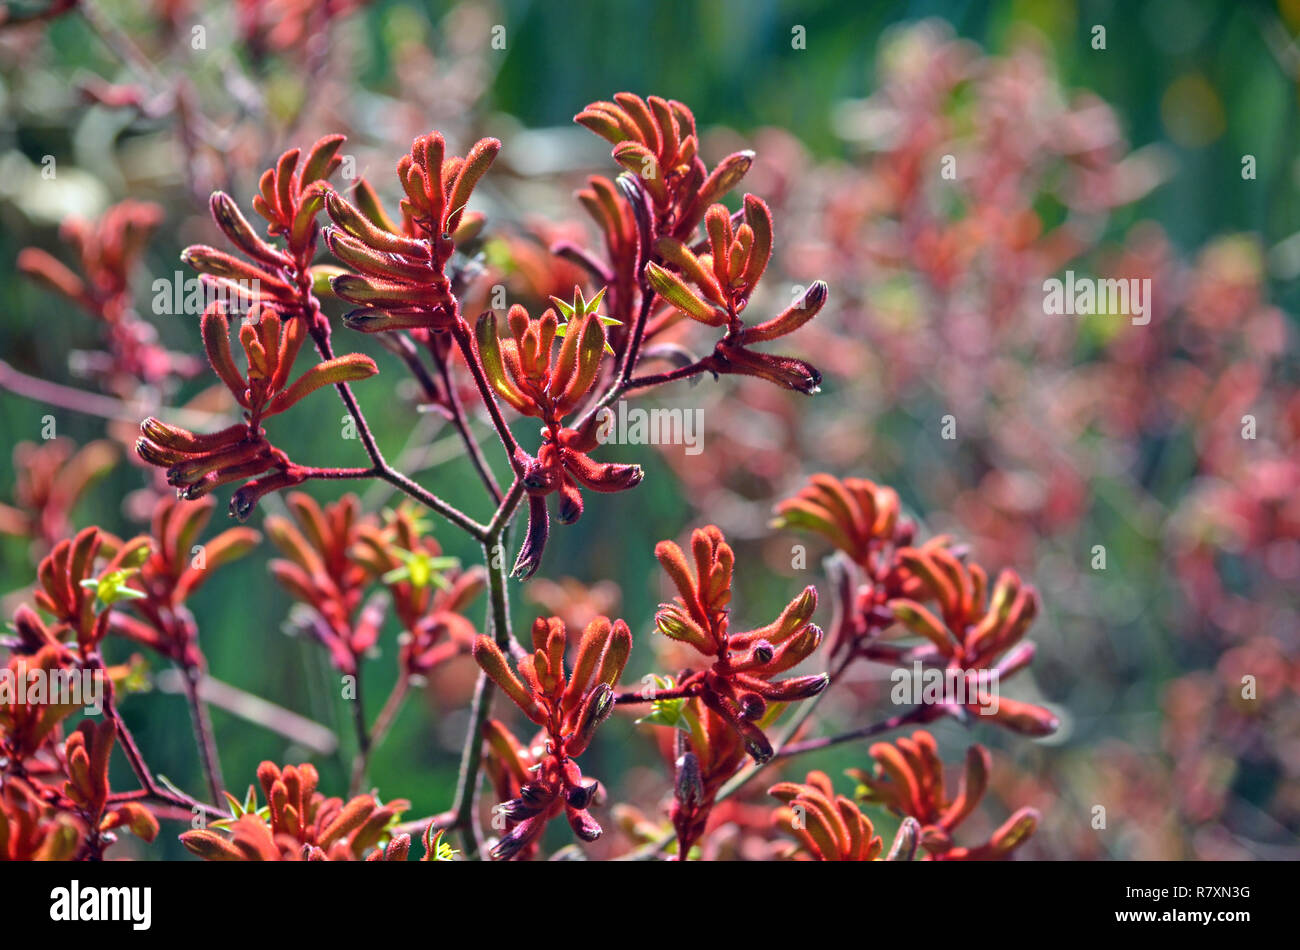 Western Australian native Red Kangaroo Paw Pflanzen, Anigozanthos, der Familie der Haemodoraceae (bloodwort Familie) Stockfoto